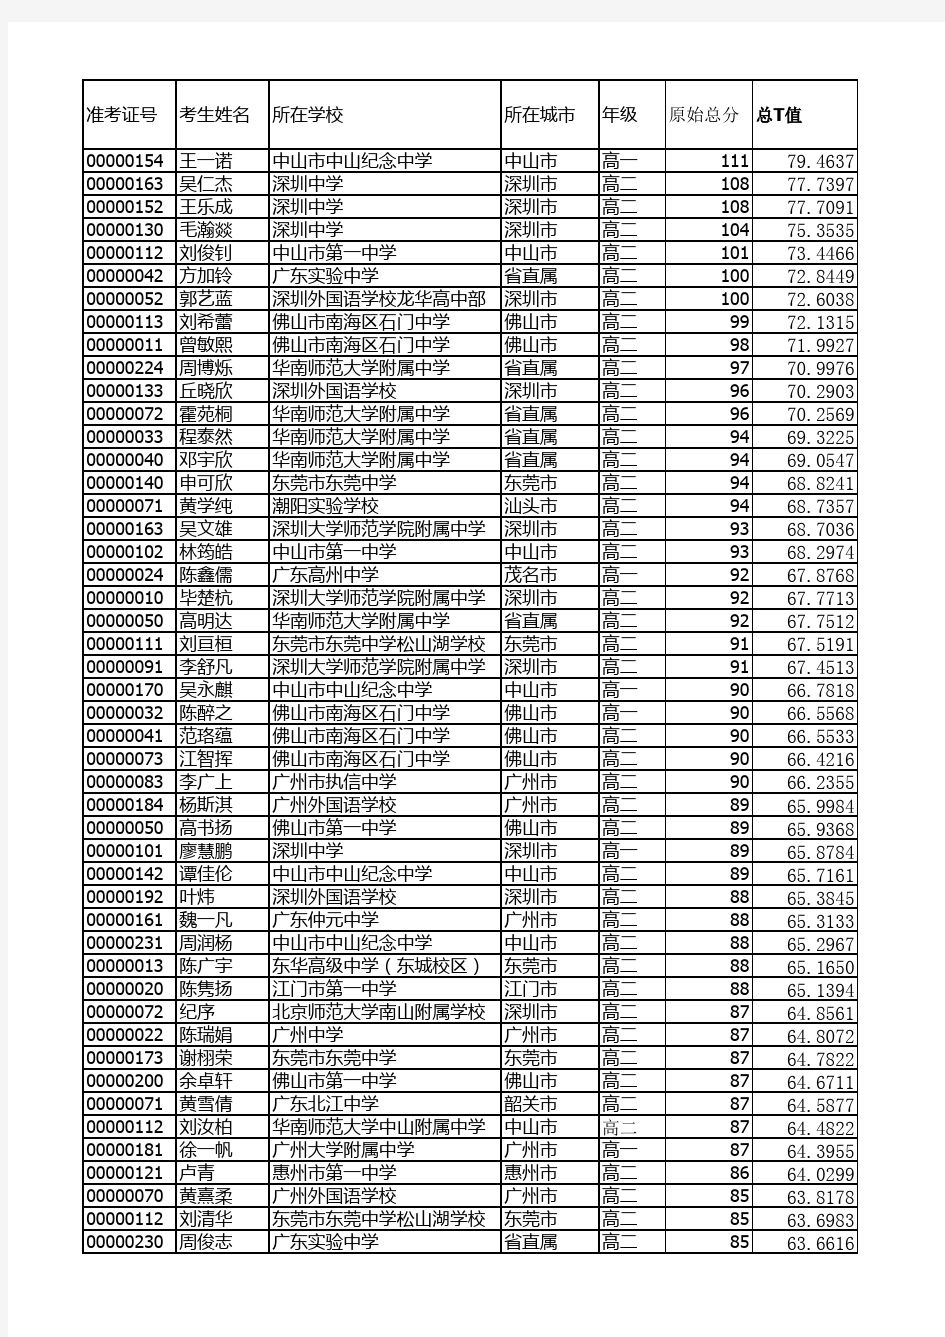 2019年全国中学生生物学联赛广东赛区成绩表(公布) (1)